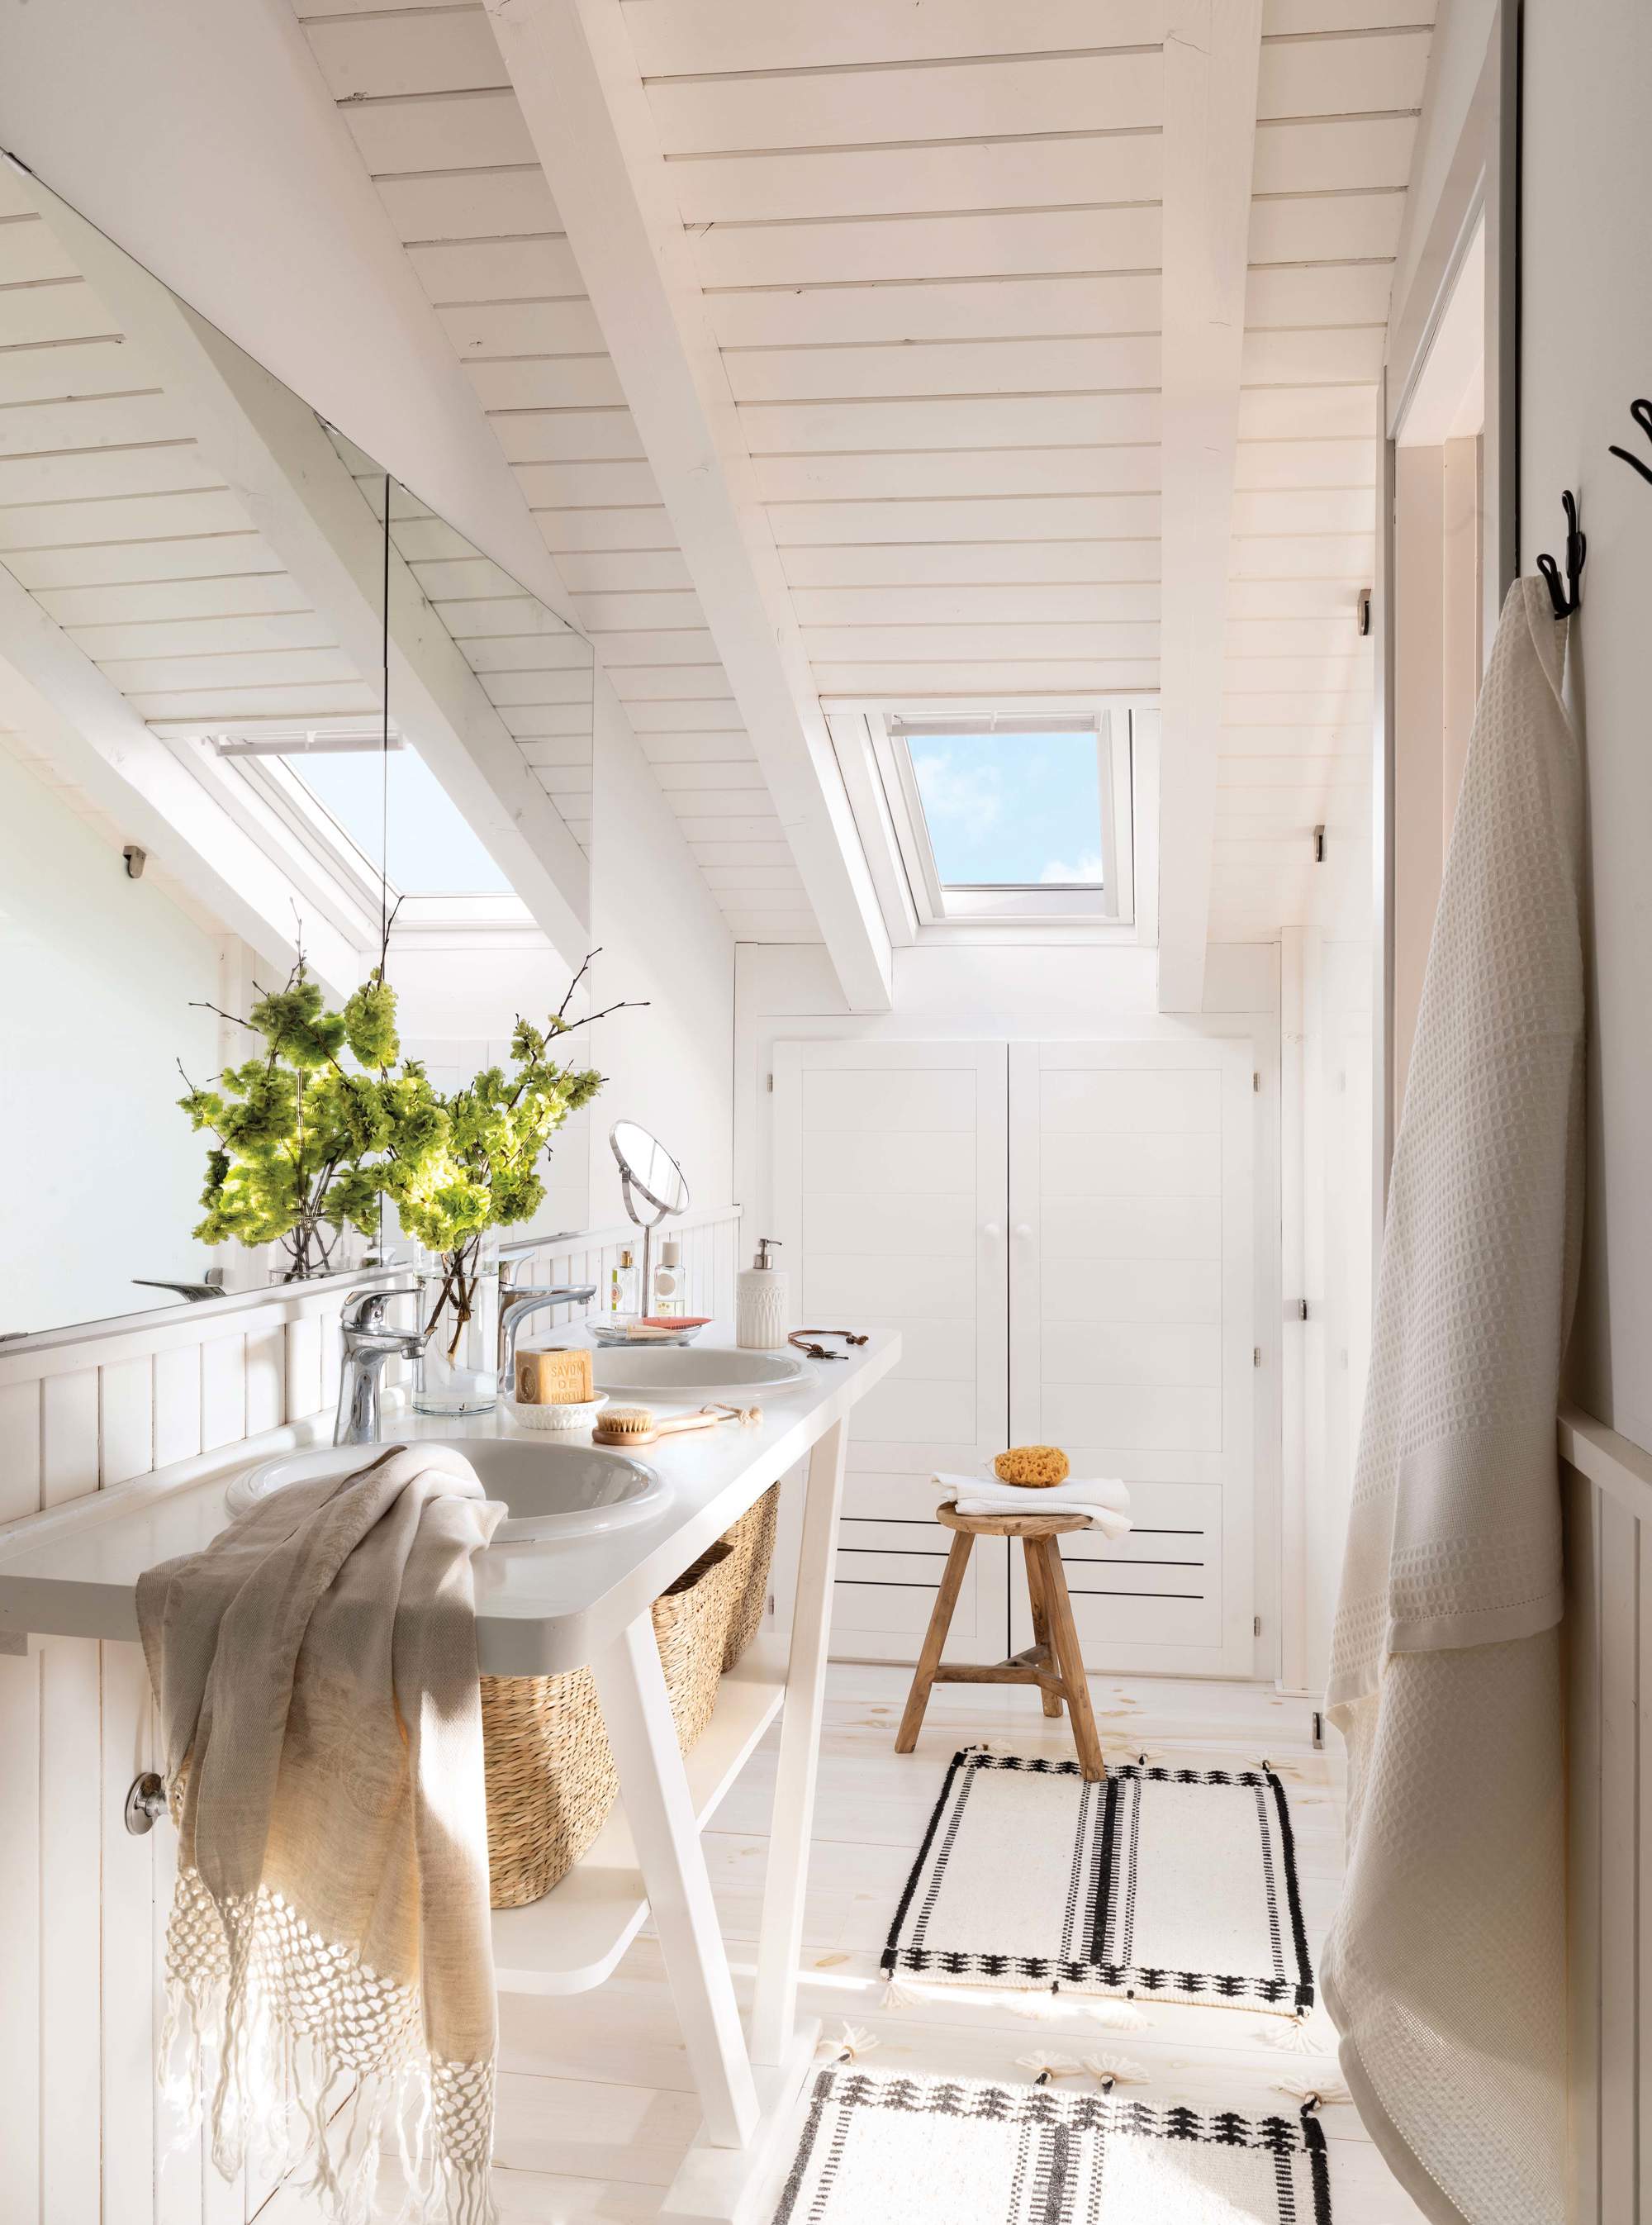 Baño con mueble abierto de lavabo lacado en blanco, alfombras, toallas y taburete